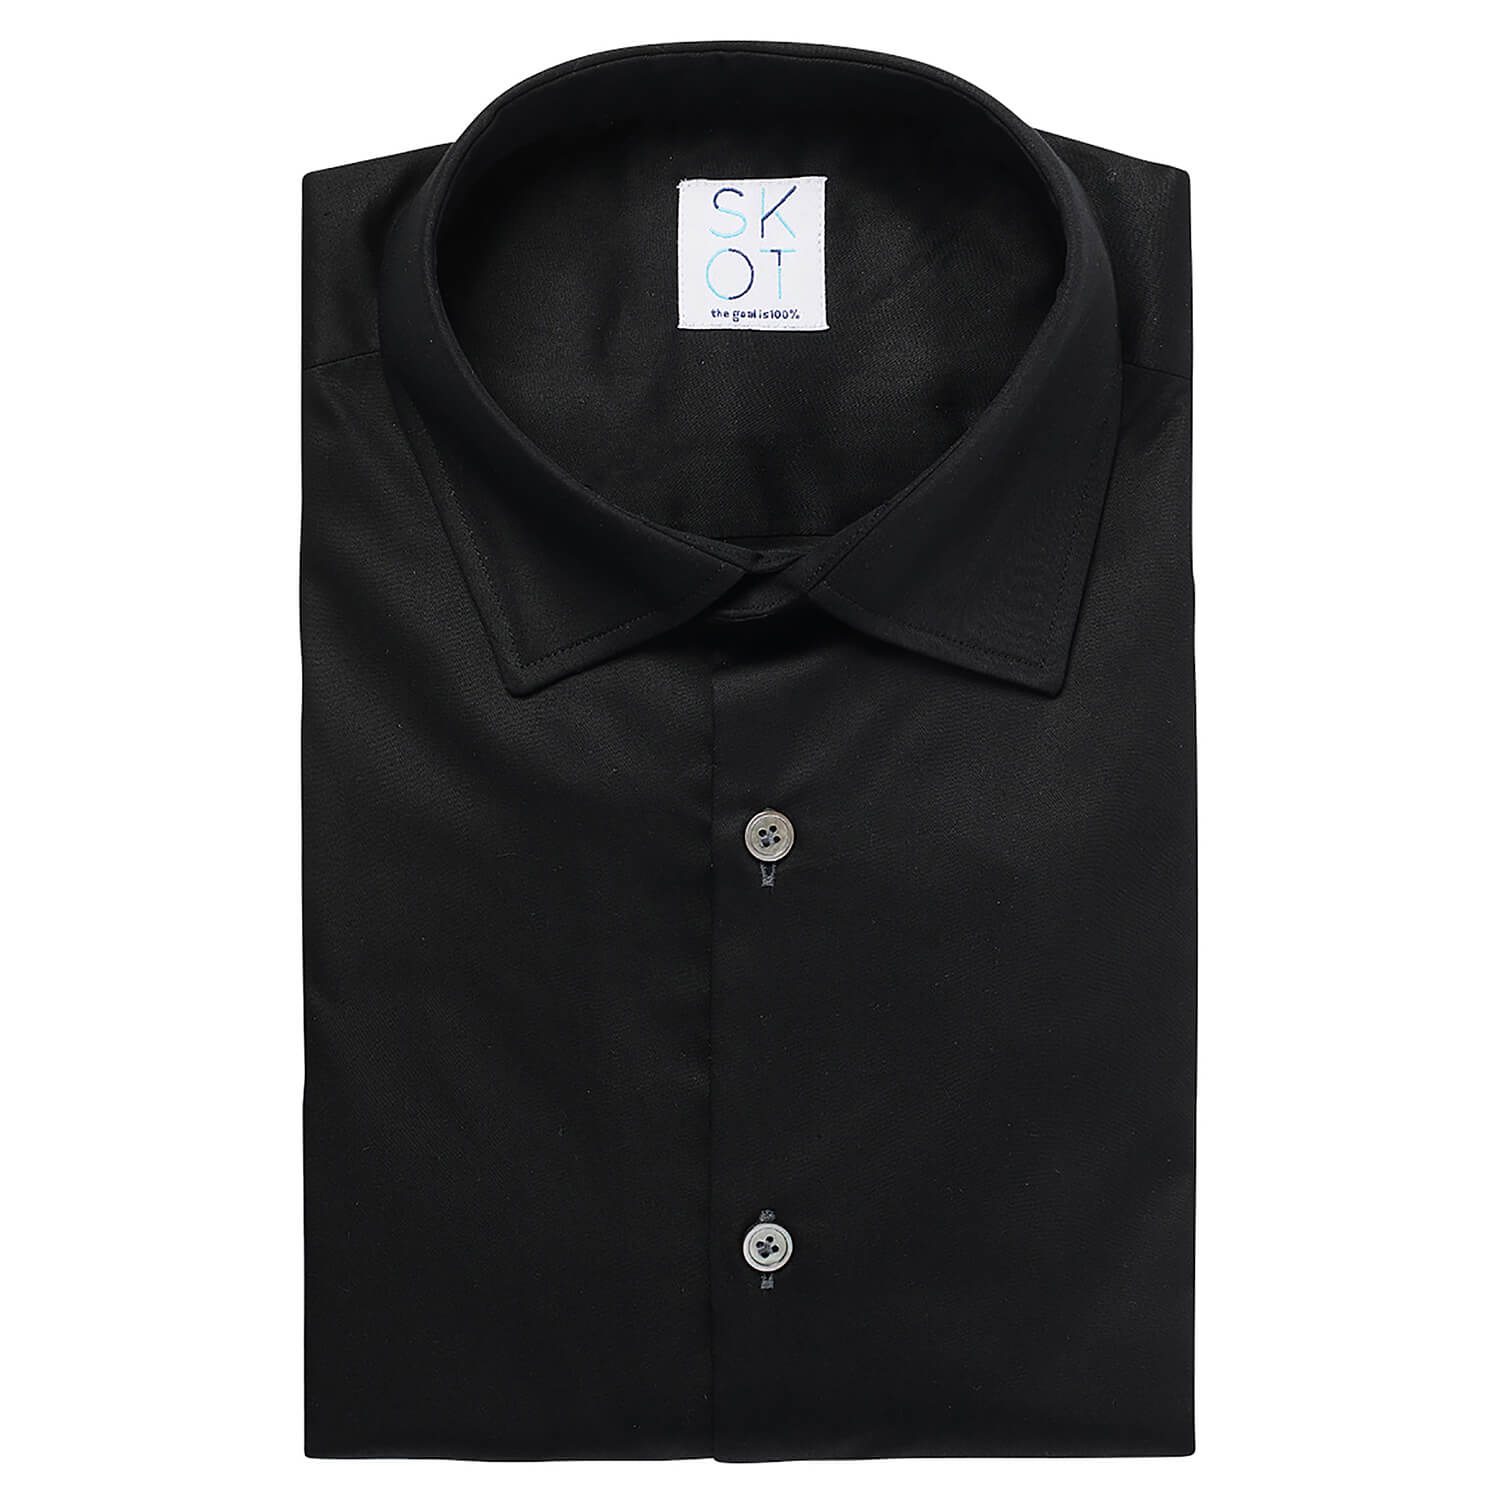 SKOT Duurzaam Overhemd Heren - Hemd Volwassenen - Circular Black - Slim Fit - Zwart - Maat S